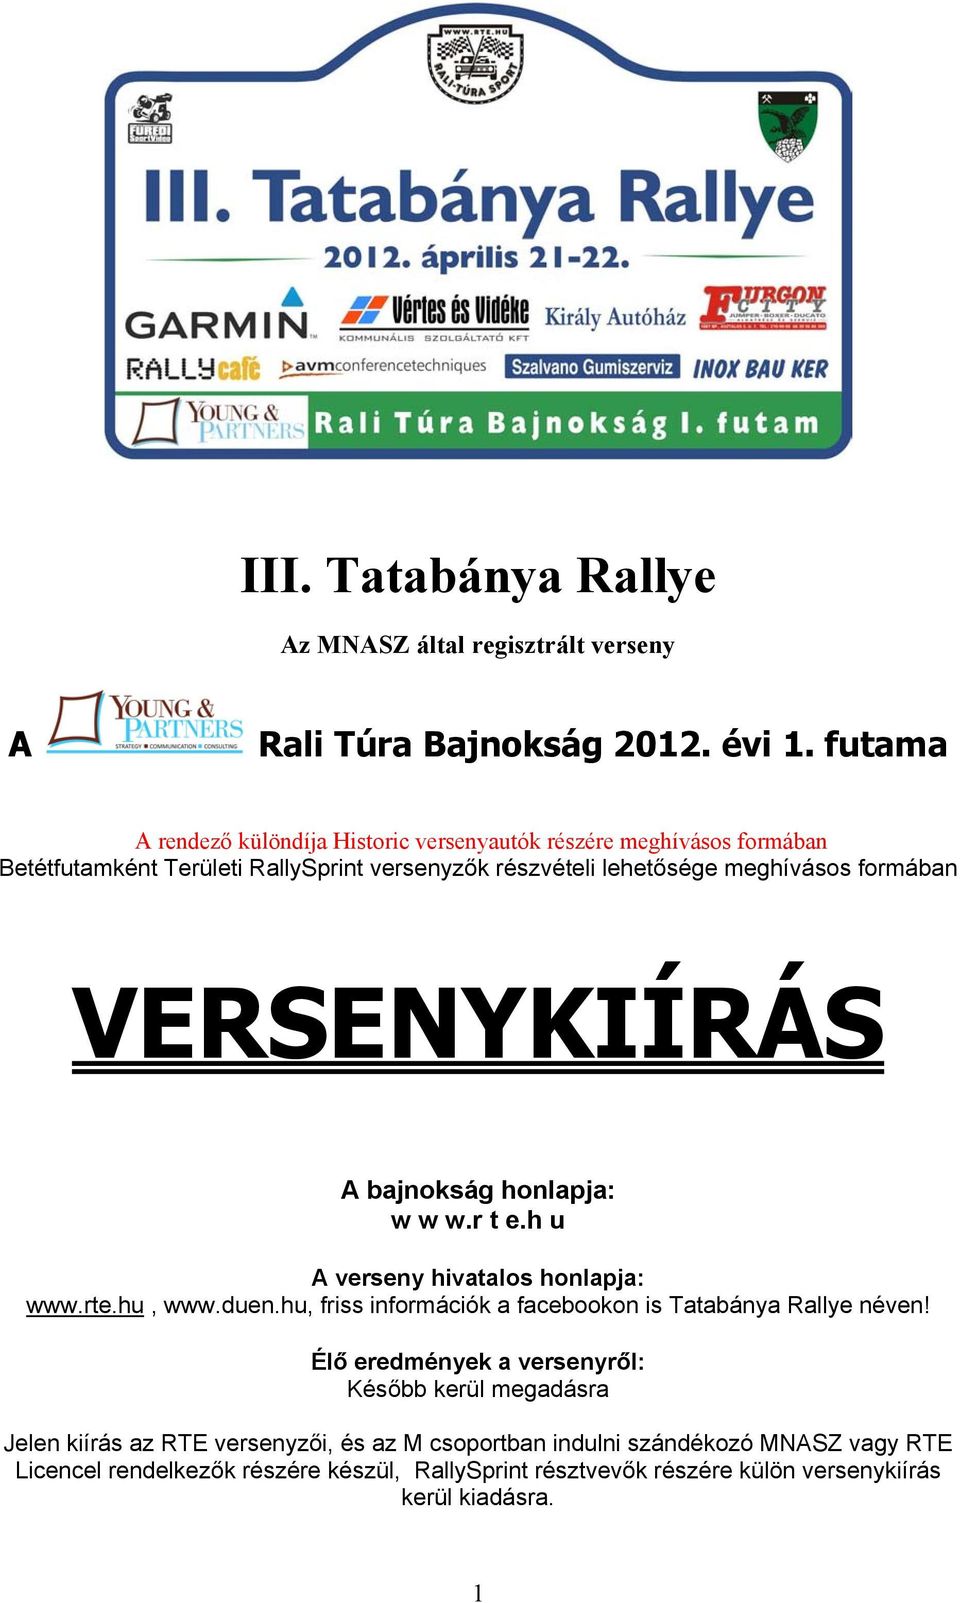 VERSENYKIÍRÁS A bajnokság honlapja: w w w.r t e.h u A verseny hivatalos honlapja: www.rte.hu, www.duen.hu, friss információk a facebookon is Tatabánya Rallye néven!